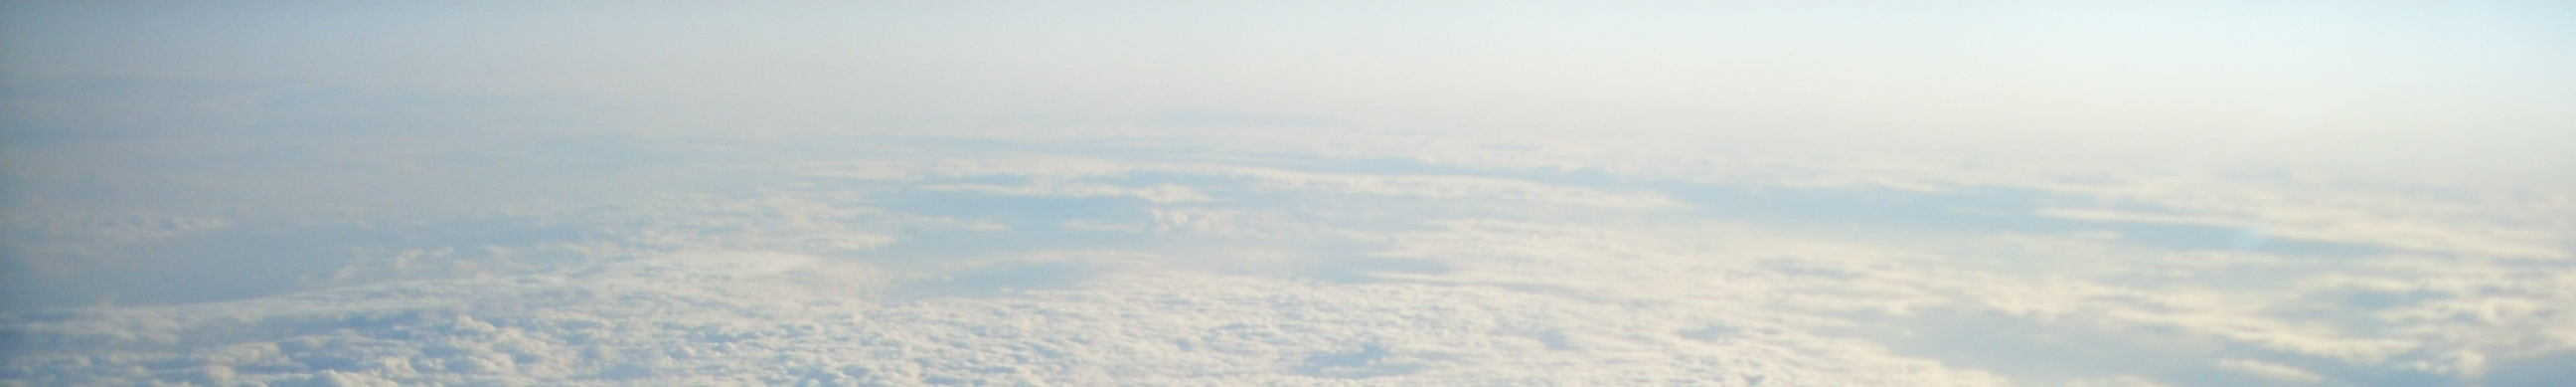 Végezetül néhány sor a résztvevőktől: SZILÁGYI LÁSZLÓ - Utazás közlekedés...nagyszerű élmény volt repülni a felhők között.